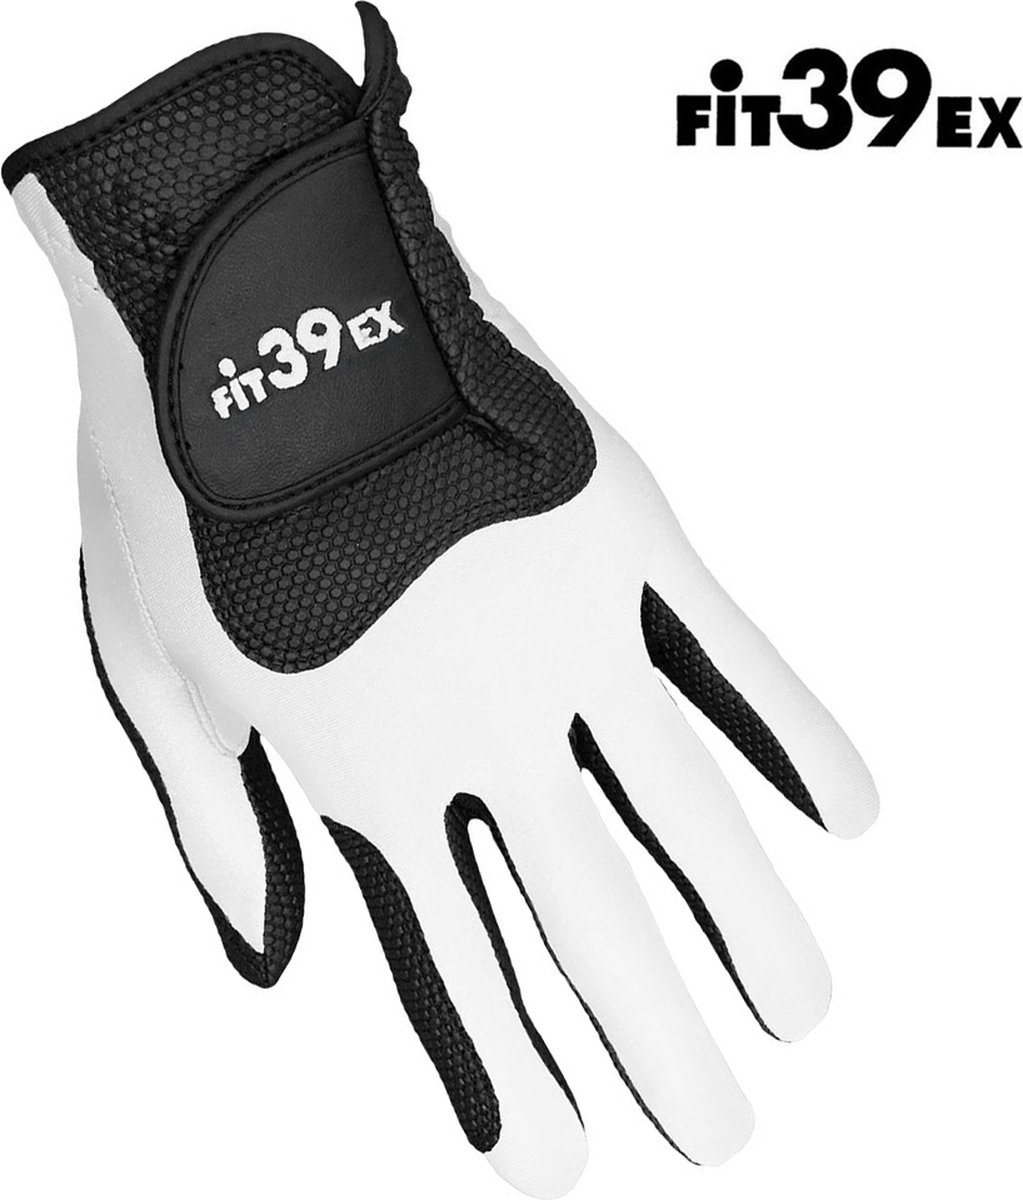 Fit39EX - golfhandschoen - linkshandig – wit/zwart - maat Extra Large